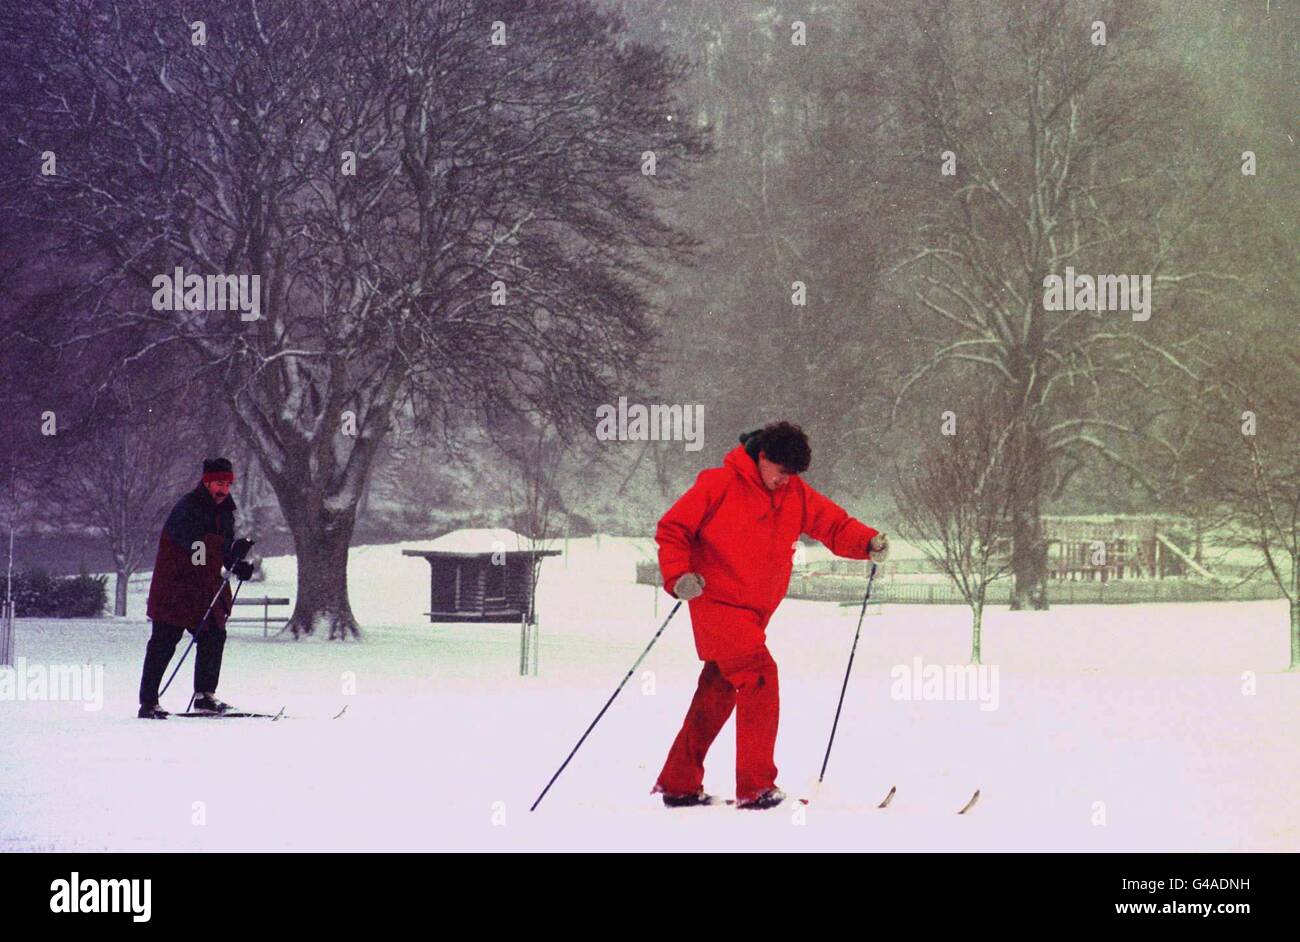 Le ski est devenu le meilleur moyen de voyager, à Édimbourg, alors que la neige s'étendait aujourd'hui à travers les frontières (lundi). Voir PA Story MÉTÉO neige. Photo de David Cheskin. Banque D'Images